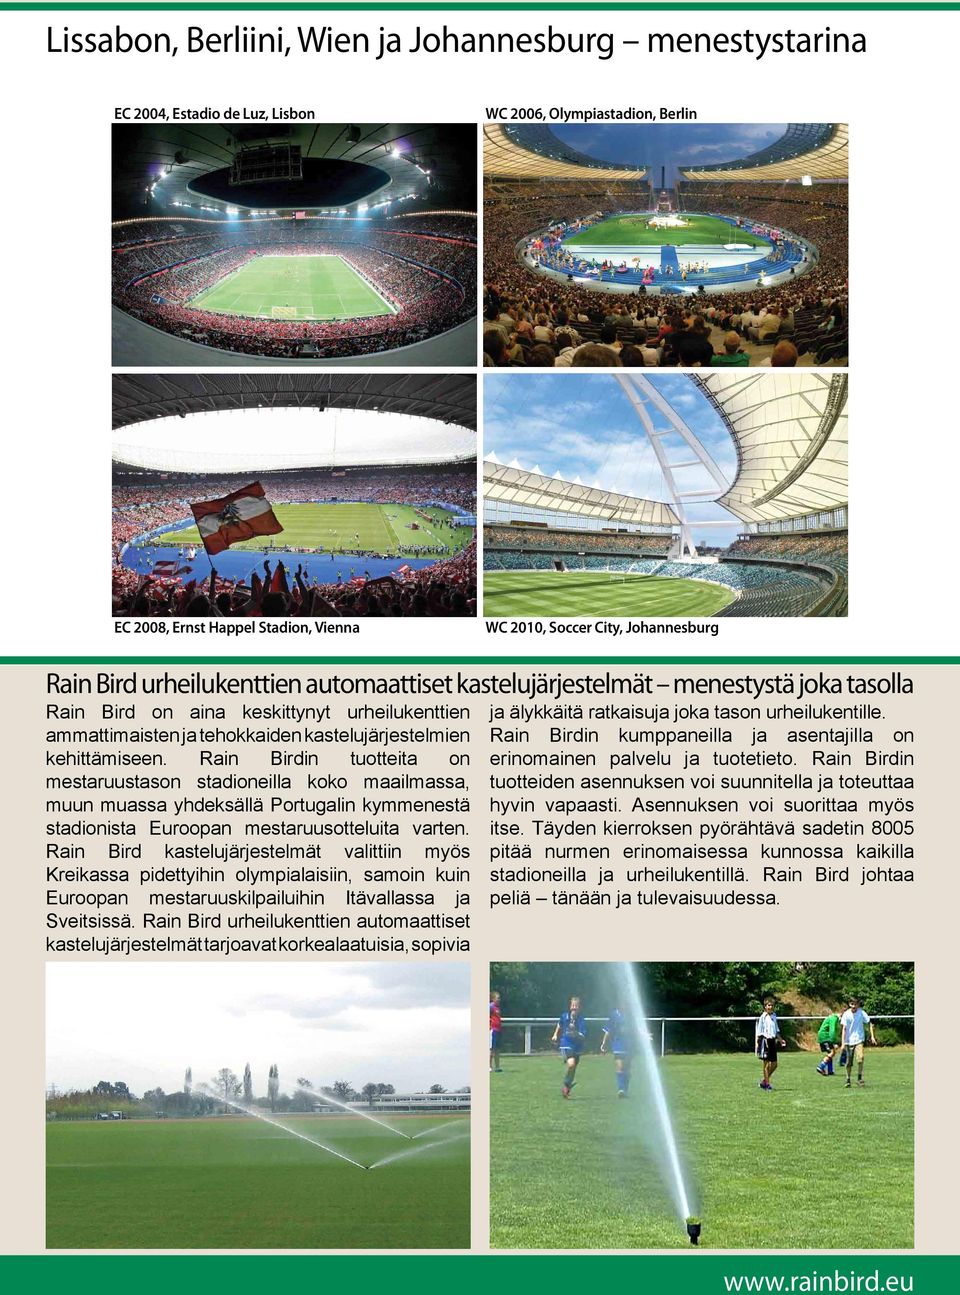 Rain Birdin tuotteita on mestaruustason stadioneilla koko maailmassa, muun muassa yhdeksällä Portugalin kymmenestä stadionista Euroopan mestaruusotteluita varten.